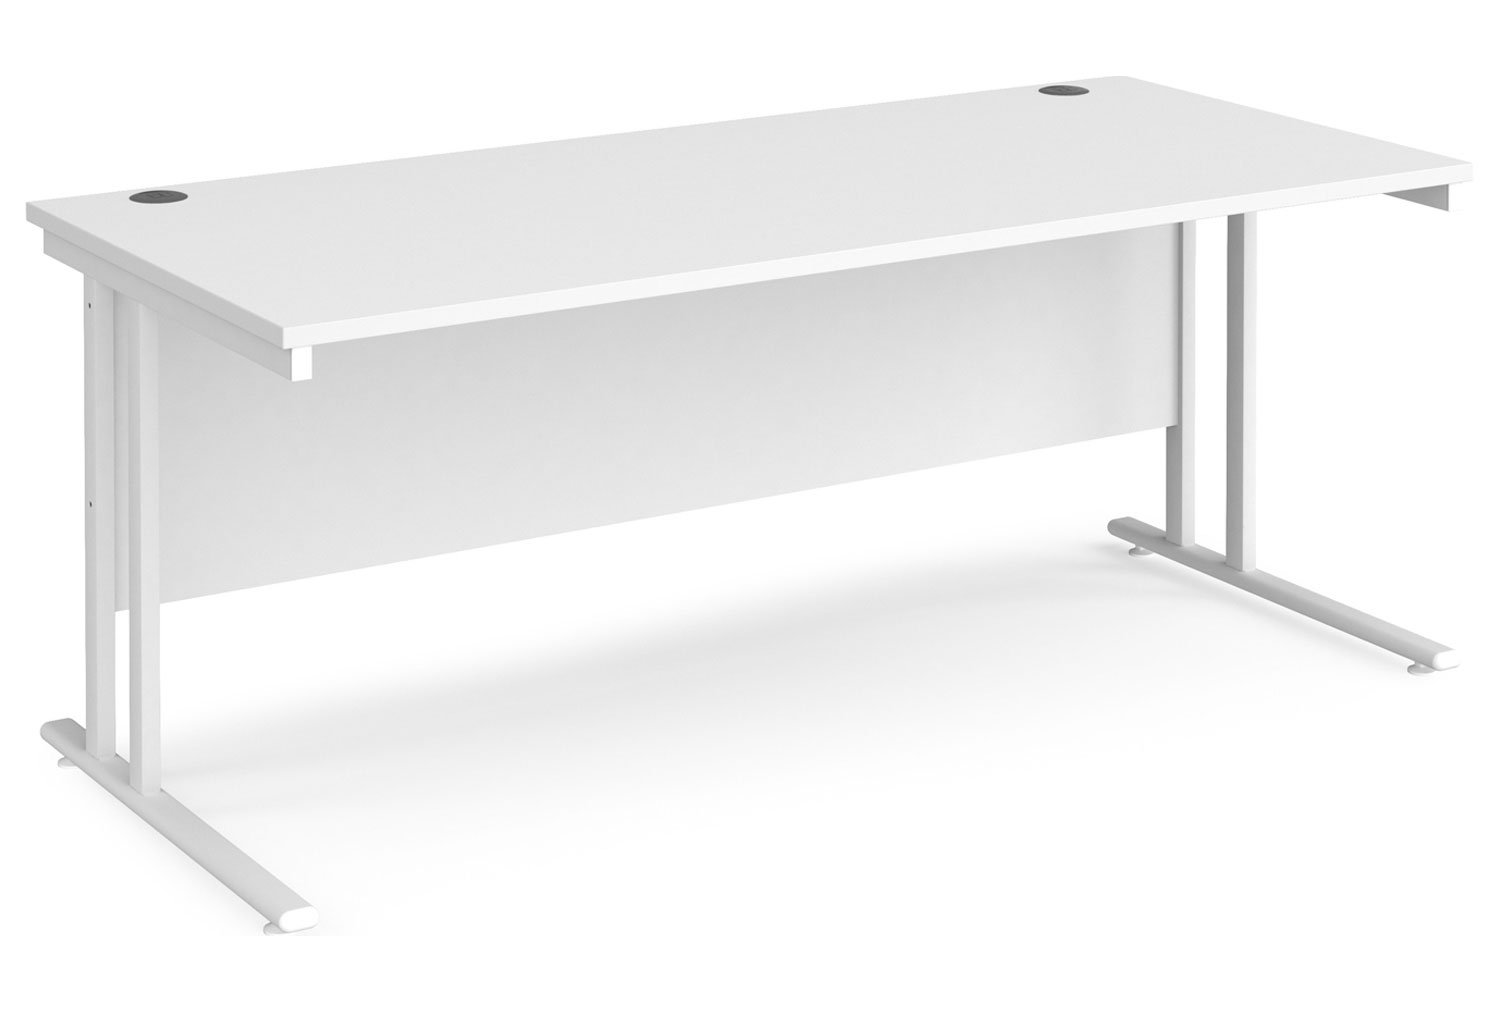 All White Premium C-Leg Rectangular Office Desk, 180wx80dx73h (cm)